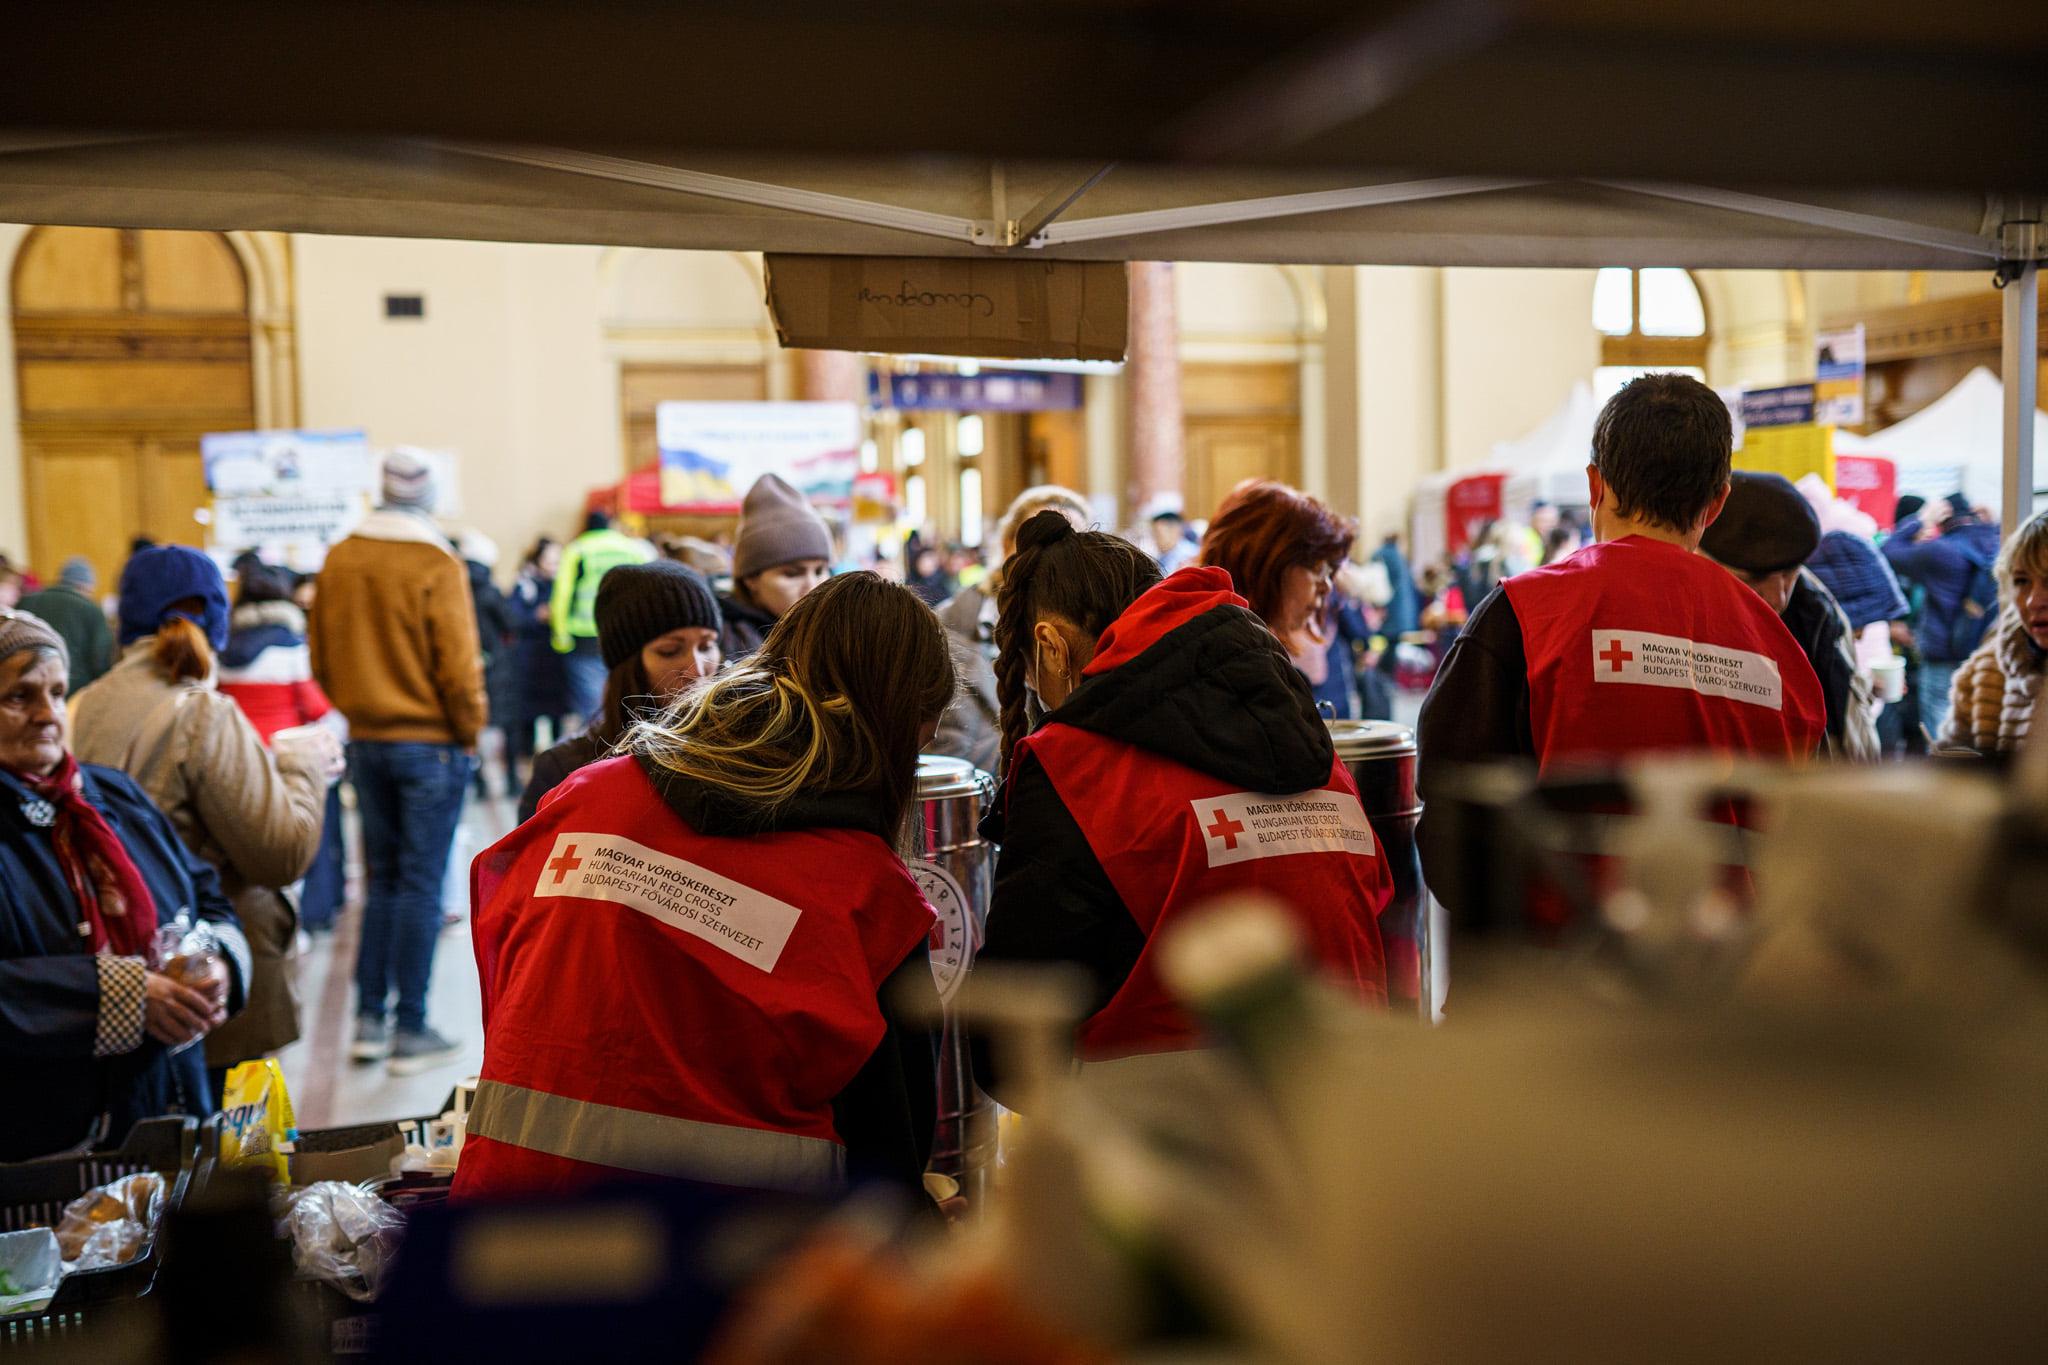 Nella foto ci sono tre giovani di spalle, tutti indossano un gilet rosso con il simbolo della Croce Rossa. Si trovano in una tenda all’interno di una stazione insieme ad altre persone. Sono impegnati a distribuire acqua e pacchi alimentari.